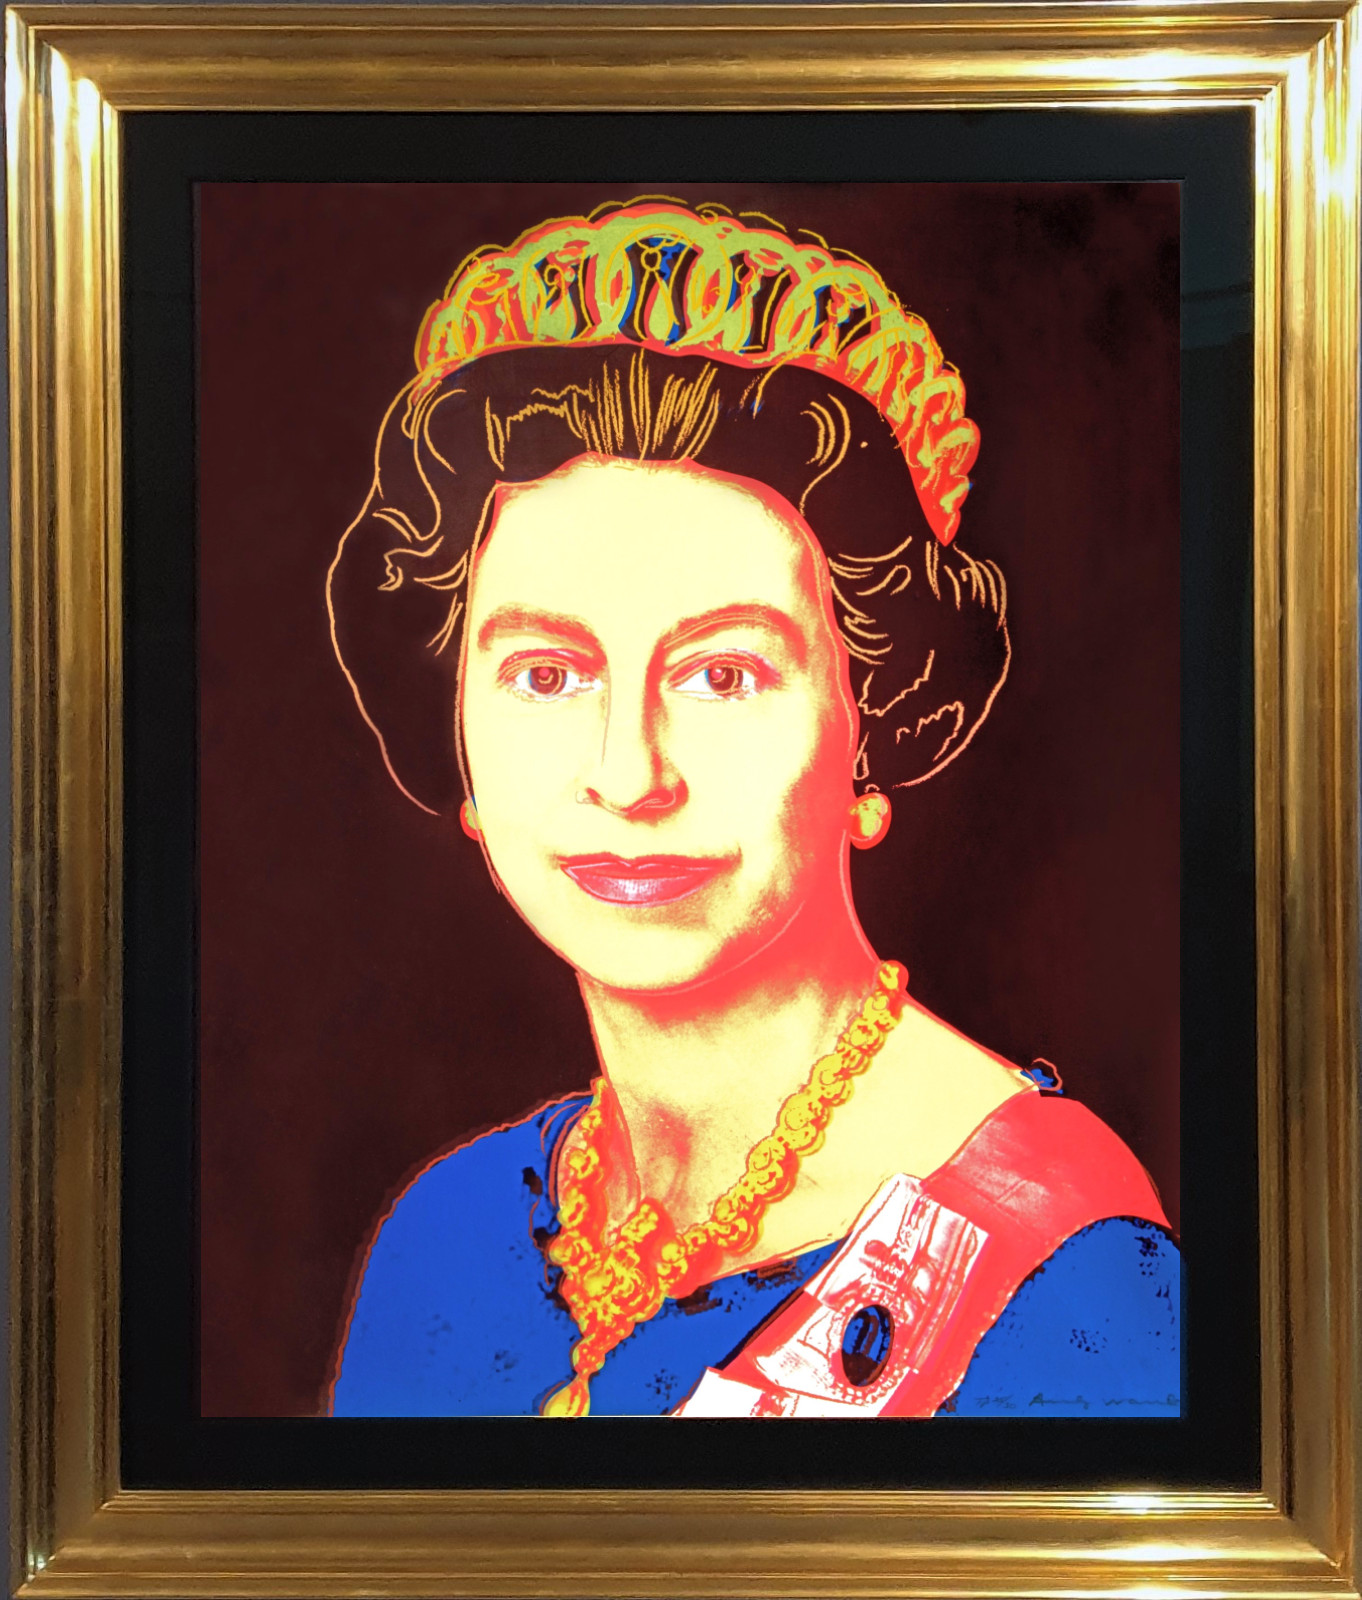 Reigning Queens - Queen Elizabeth II of The United Kingdom